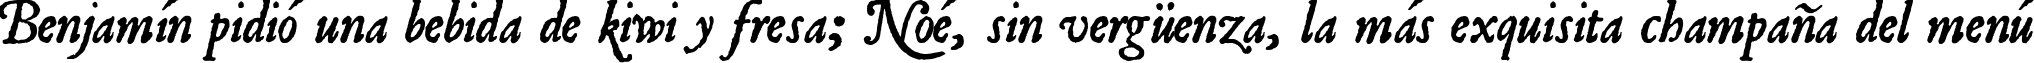 Пример написания шрифтом JSL Ancient Italic текста на испанском